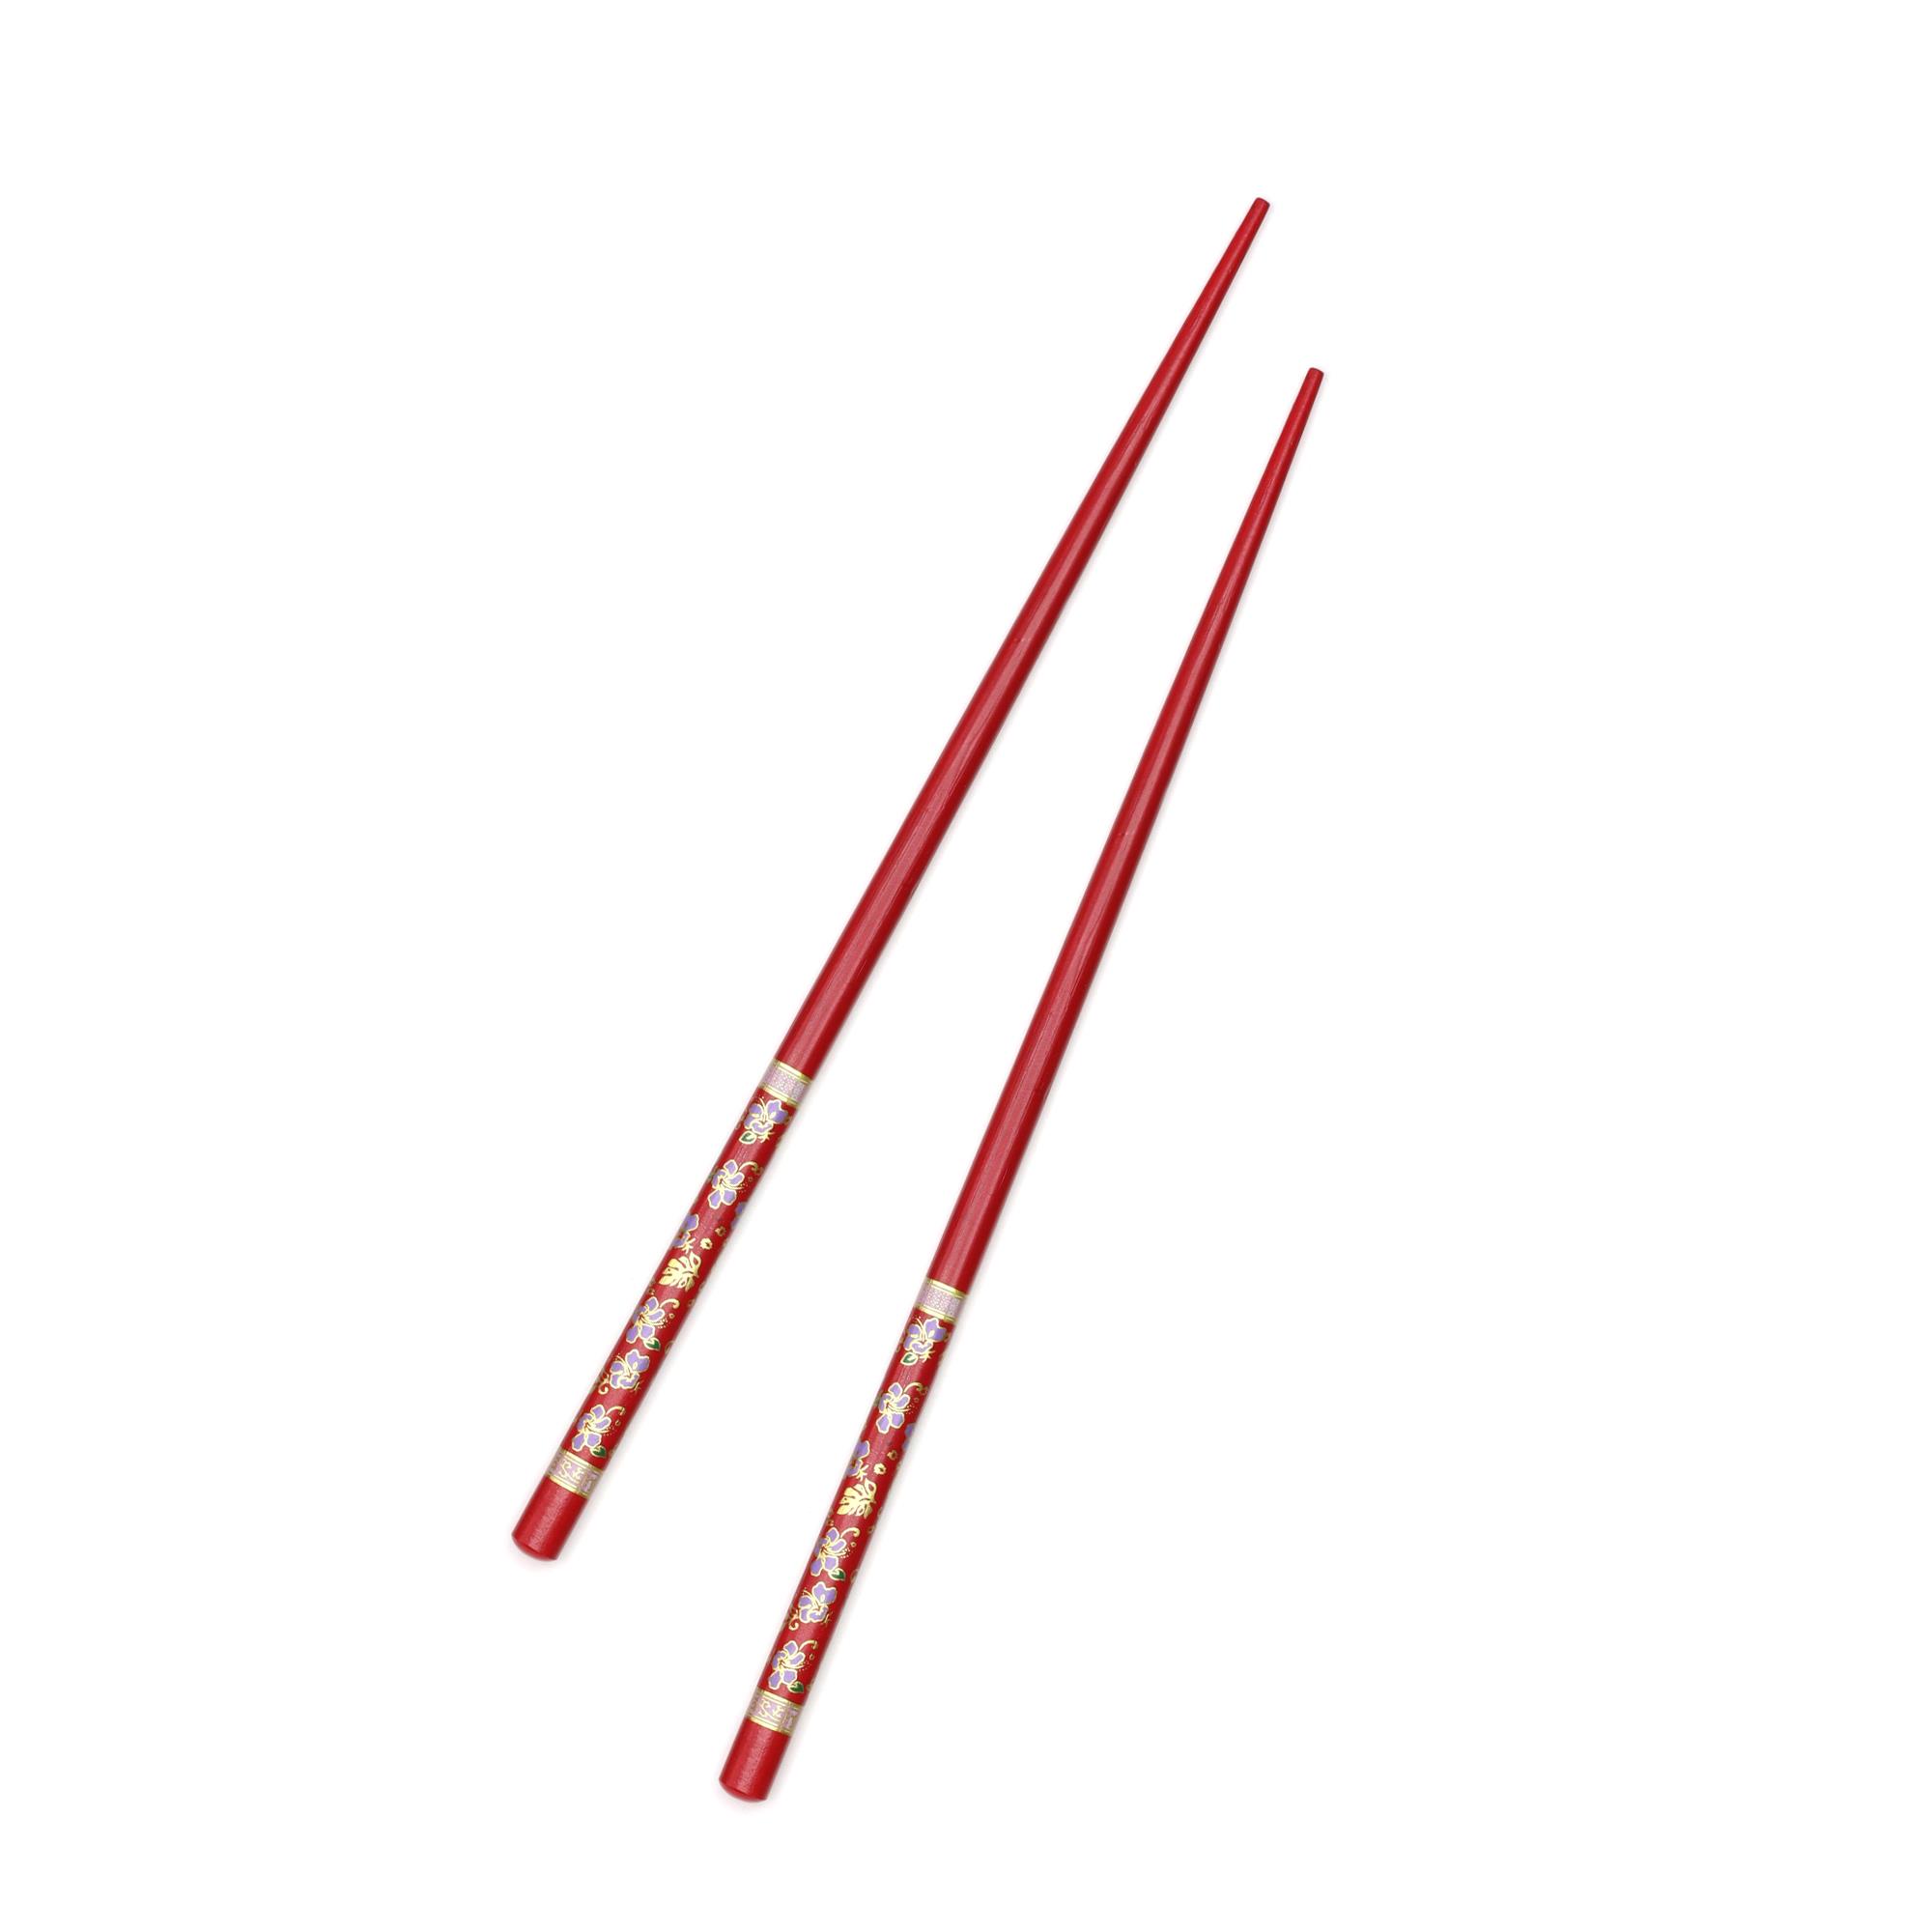 Çok Kullanımlık Bambu Çin Çubuğu (Chopsticks) Kırmızı Desenli 22,5 cm - 2 Adet